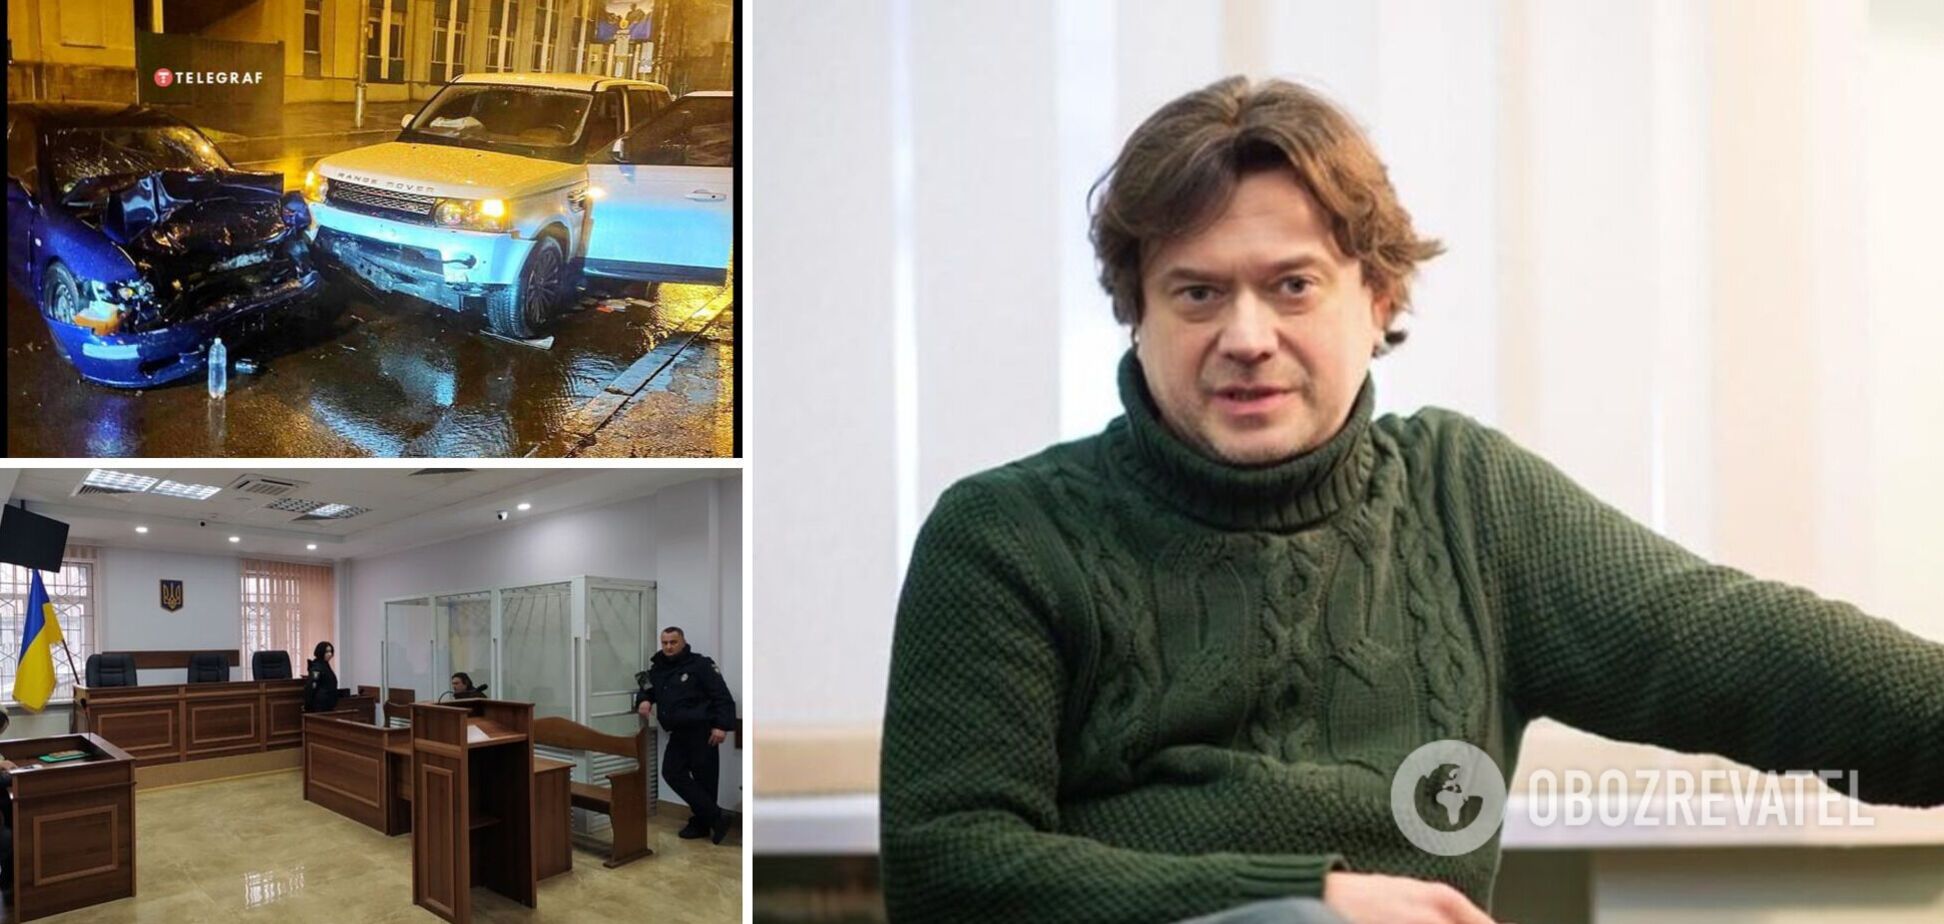 Остап Ступка в суде впервые прокомментировал 'пьяное' ДТП, которое устроил в Киеве